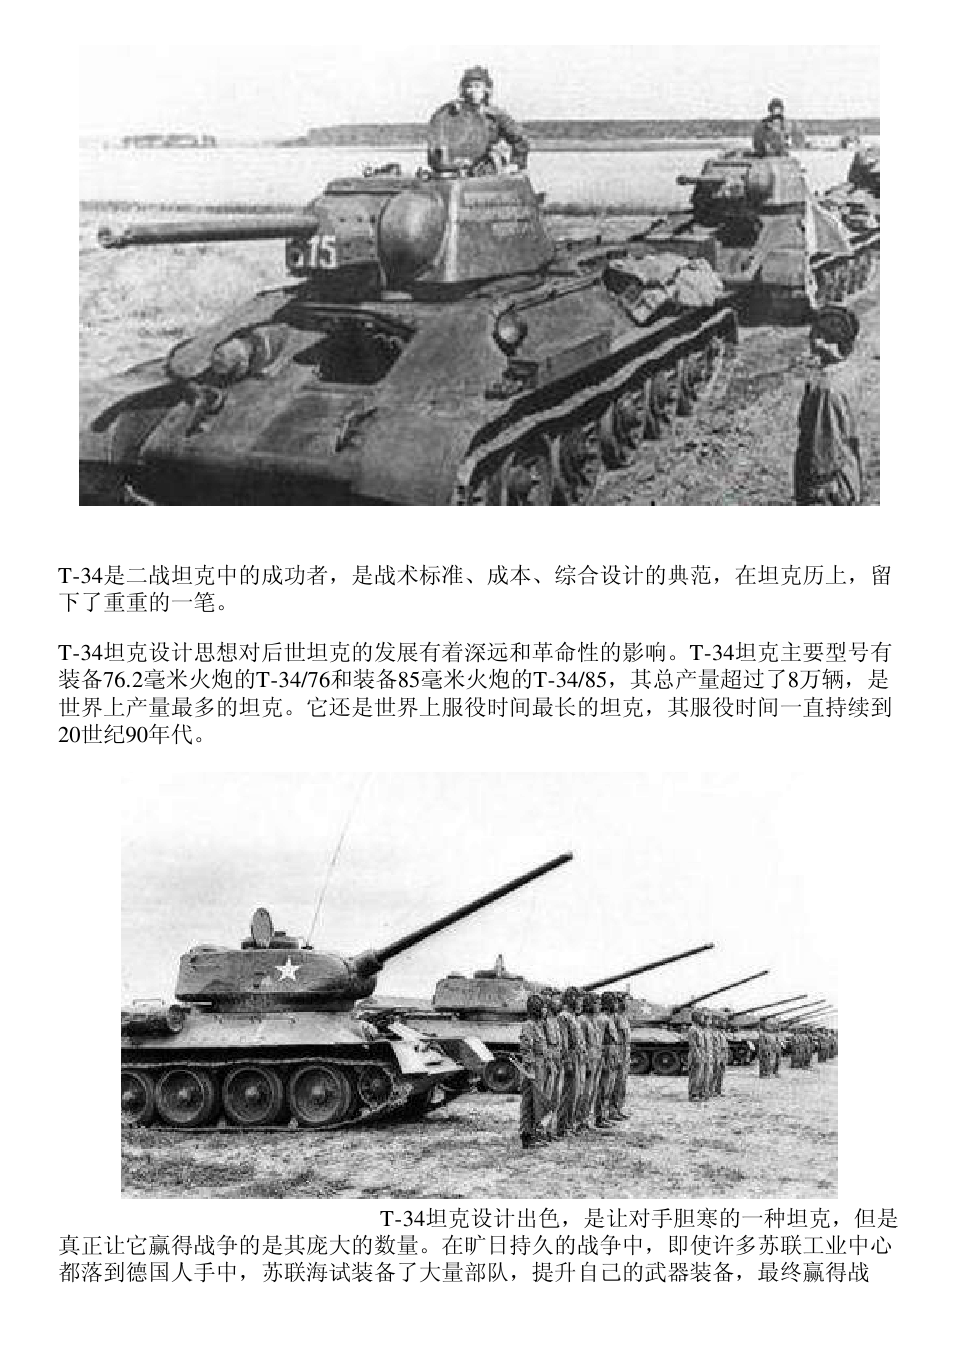 二战期间,被公认为战场上最厉害的坦克!